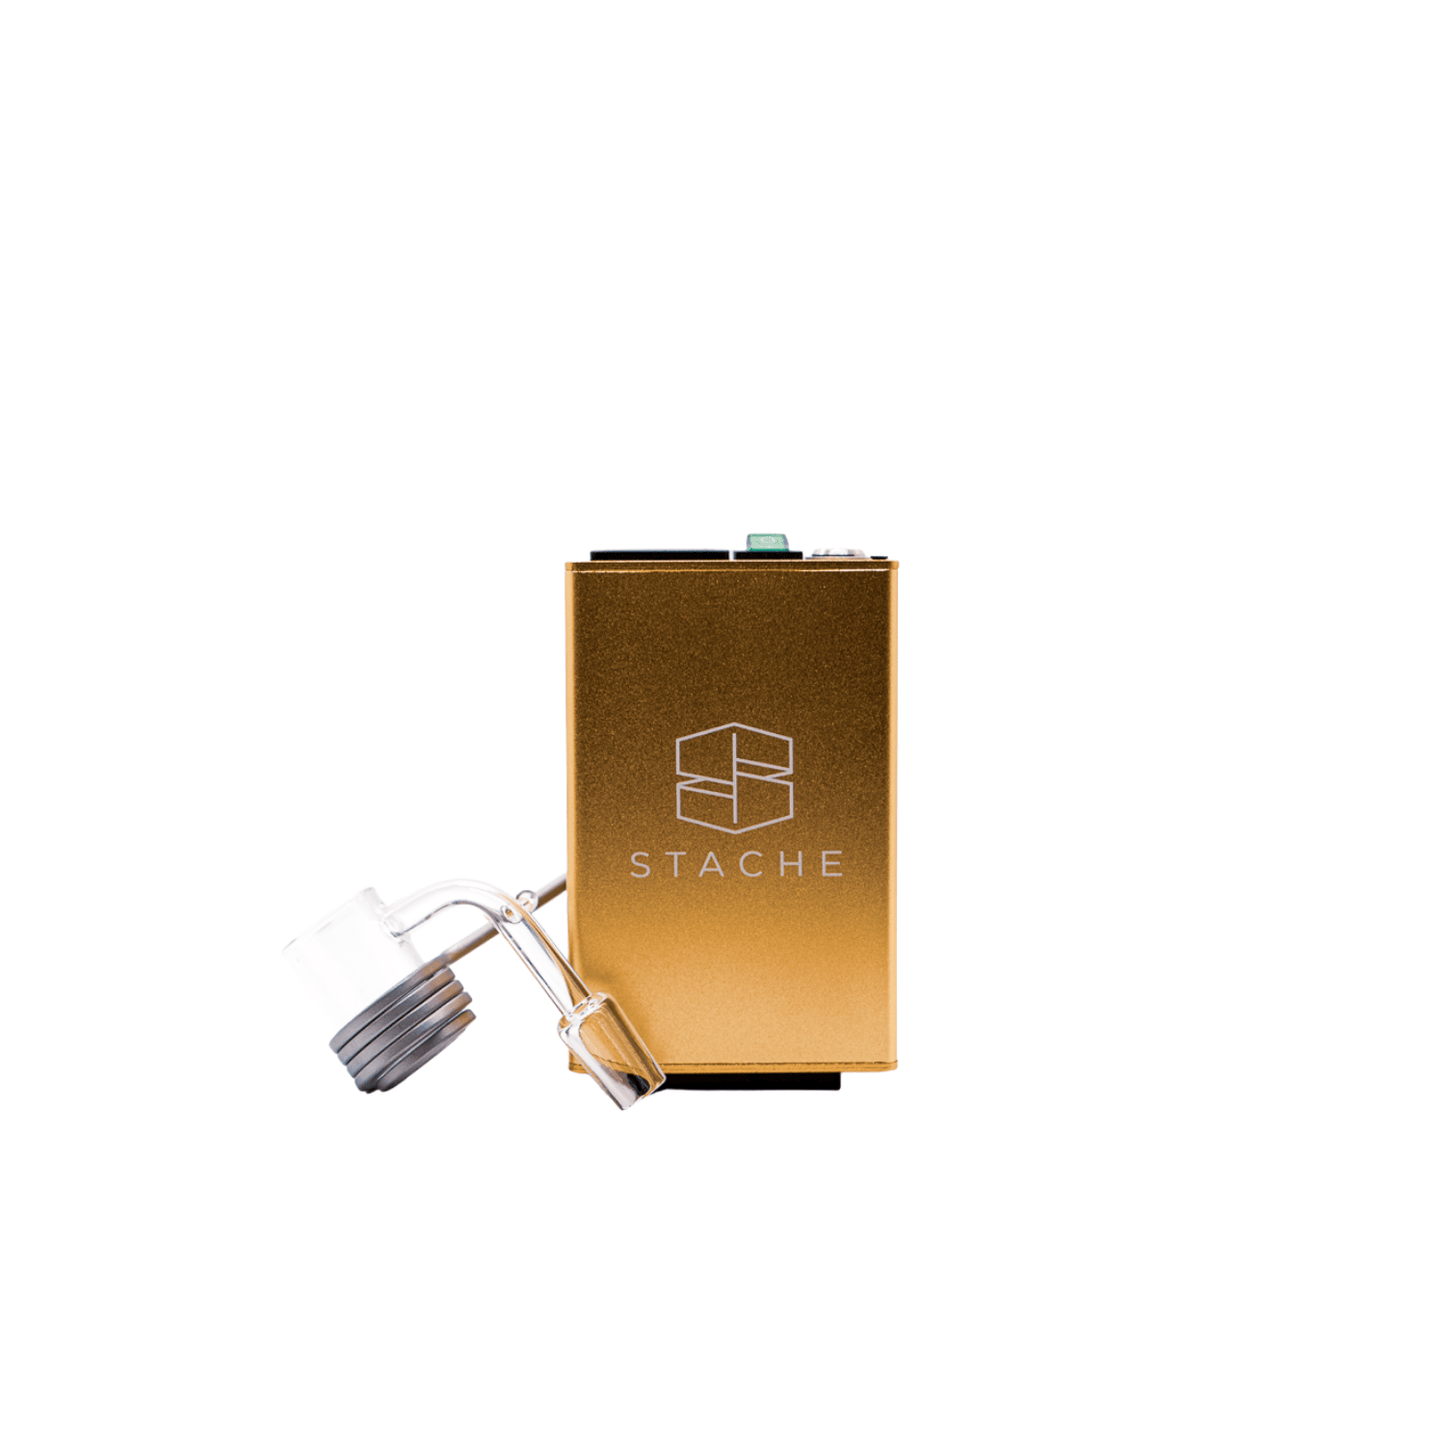 Gold Stache E-Nail Kit with 14mm Quartz Banger